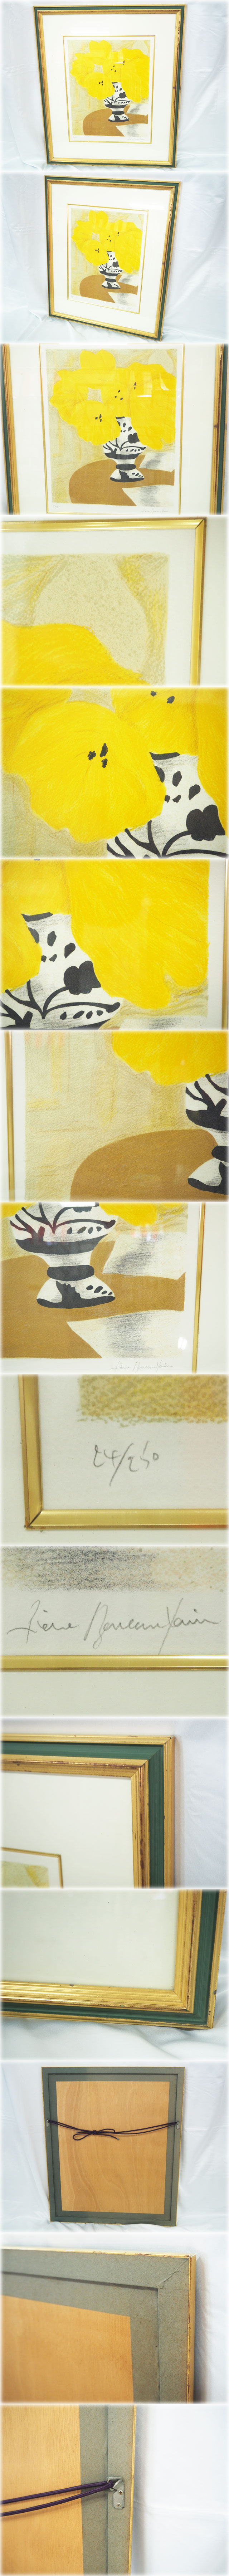 東大ピエール・ボンコンパン リトグラフ 「テーブルの上の黄色いブーケ」 額付 鉛筆サインNo.24/250 Pierre Boncompain 石版画、リトグラフ